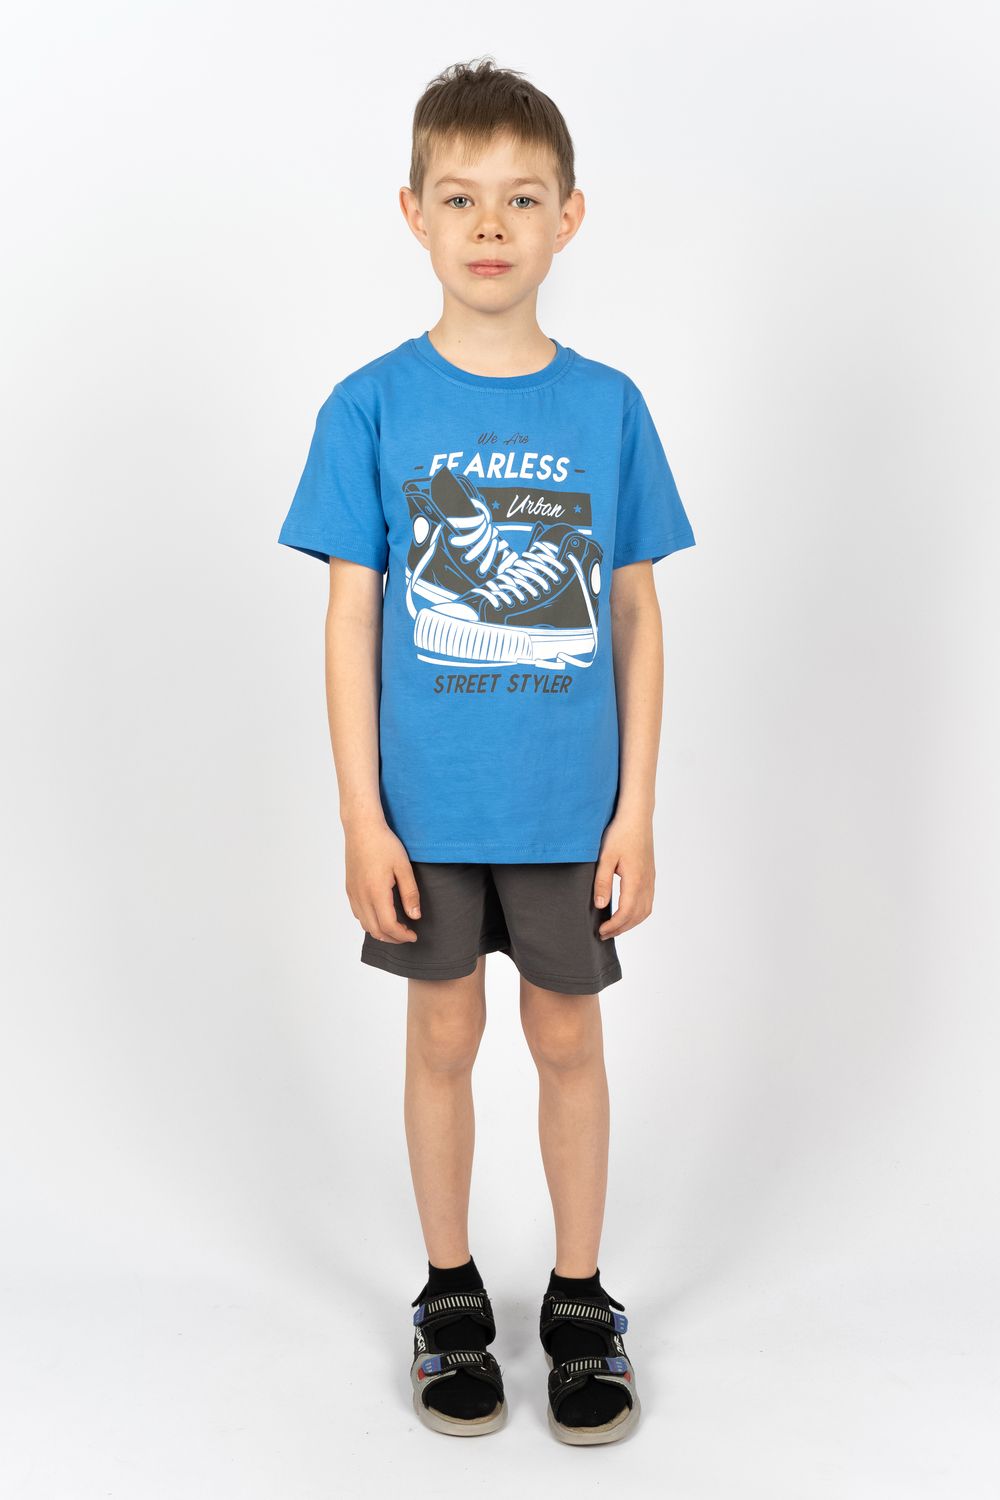 Комплект для мальчика 4293 (футболка + шорты) - джинс/т.синий